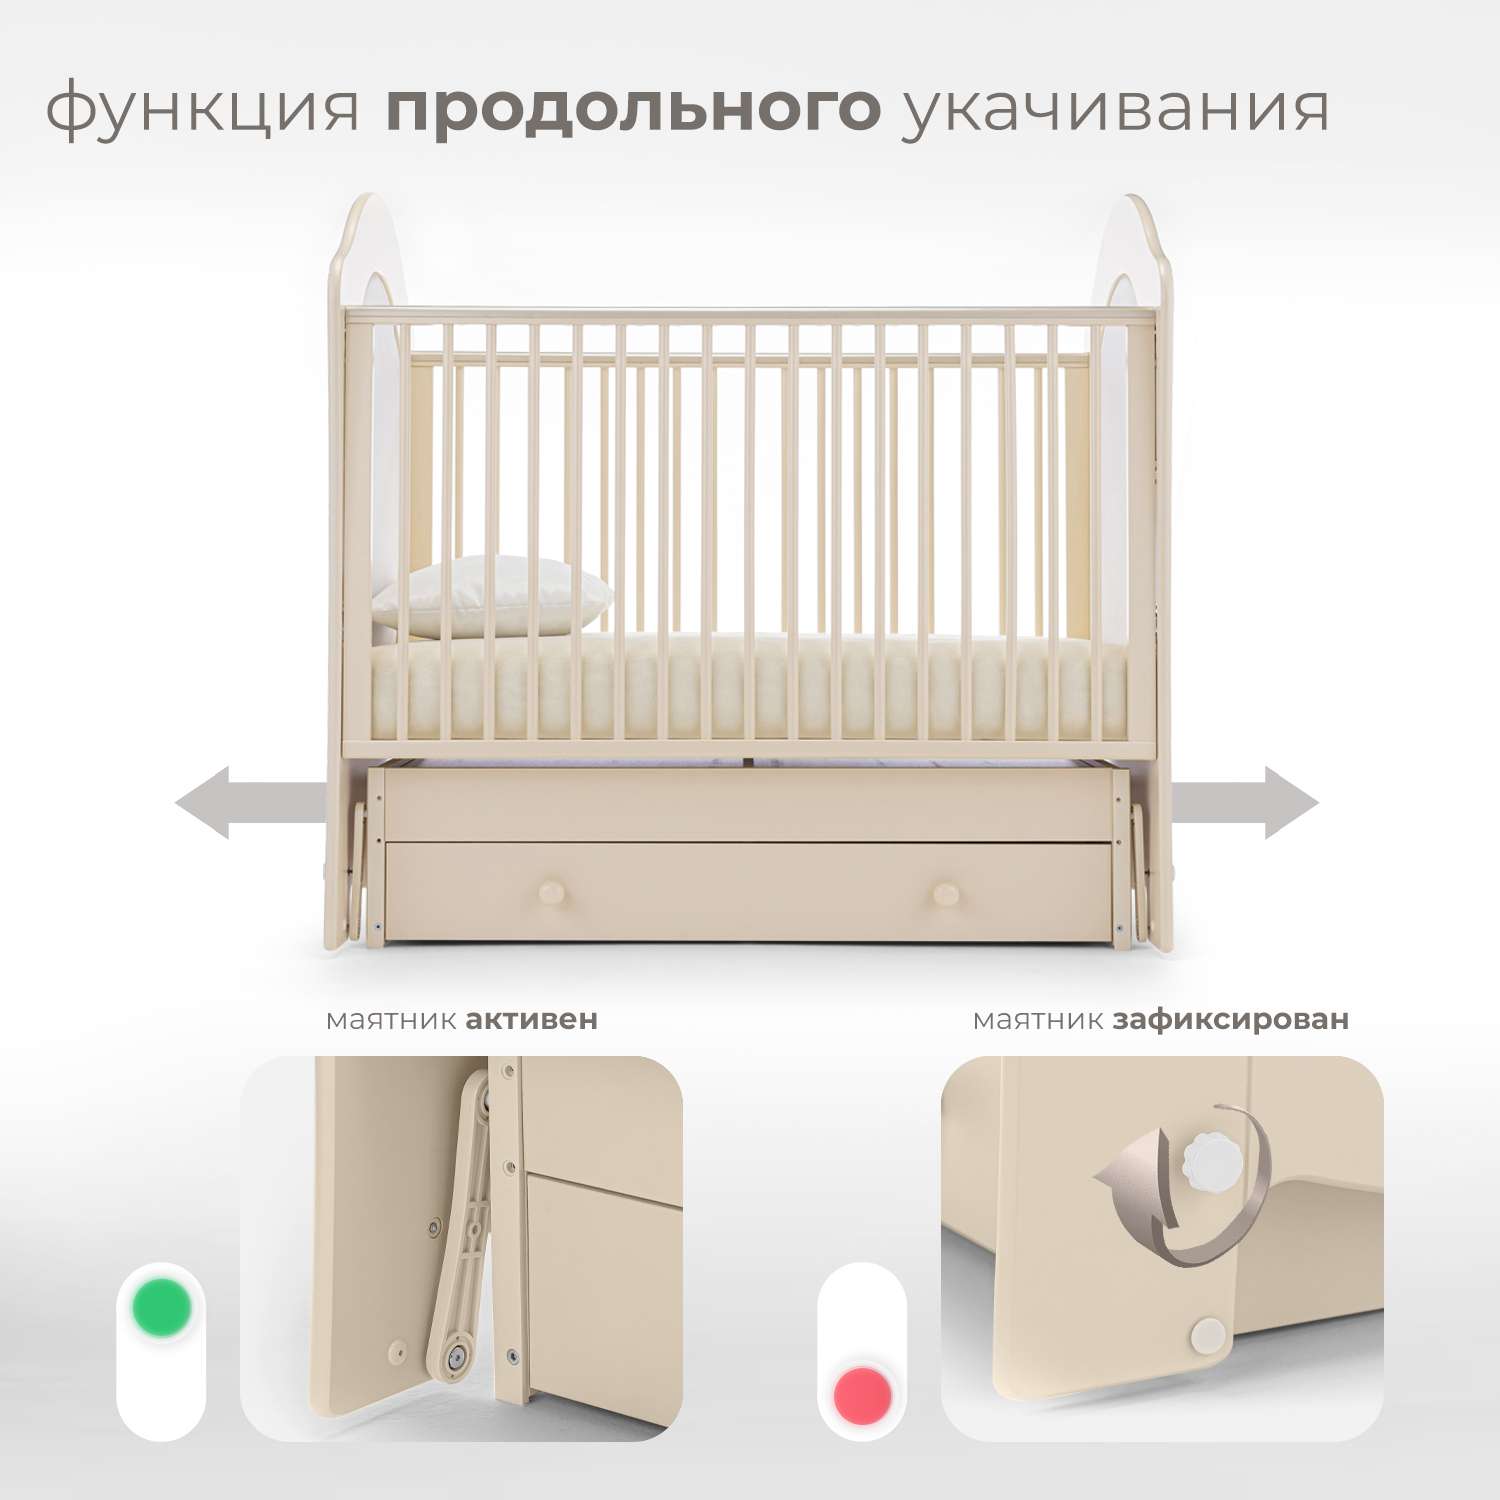 Детская кроватка Nuovita Tempi Swing прямоугольная, поперечный маятник (слоновая кость) - фото 4